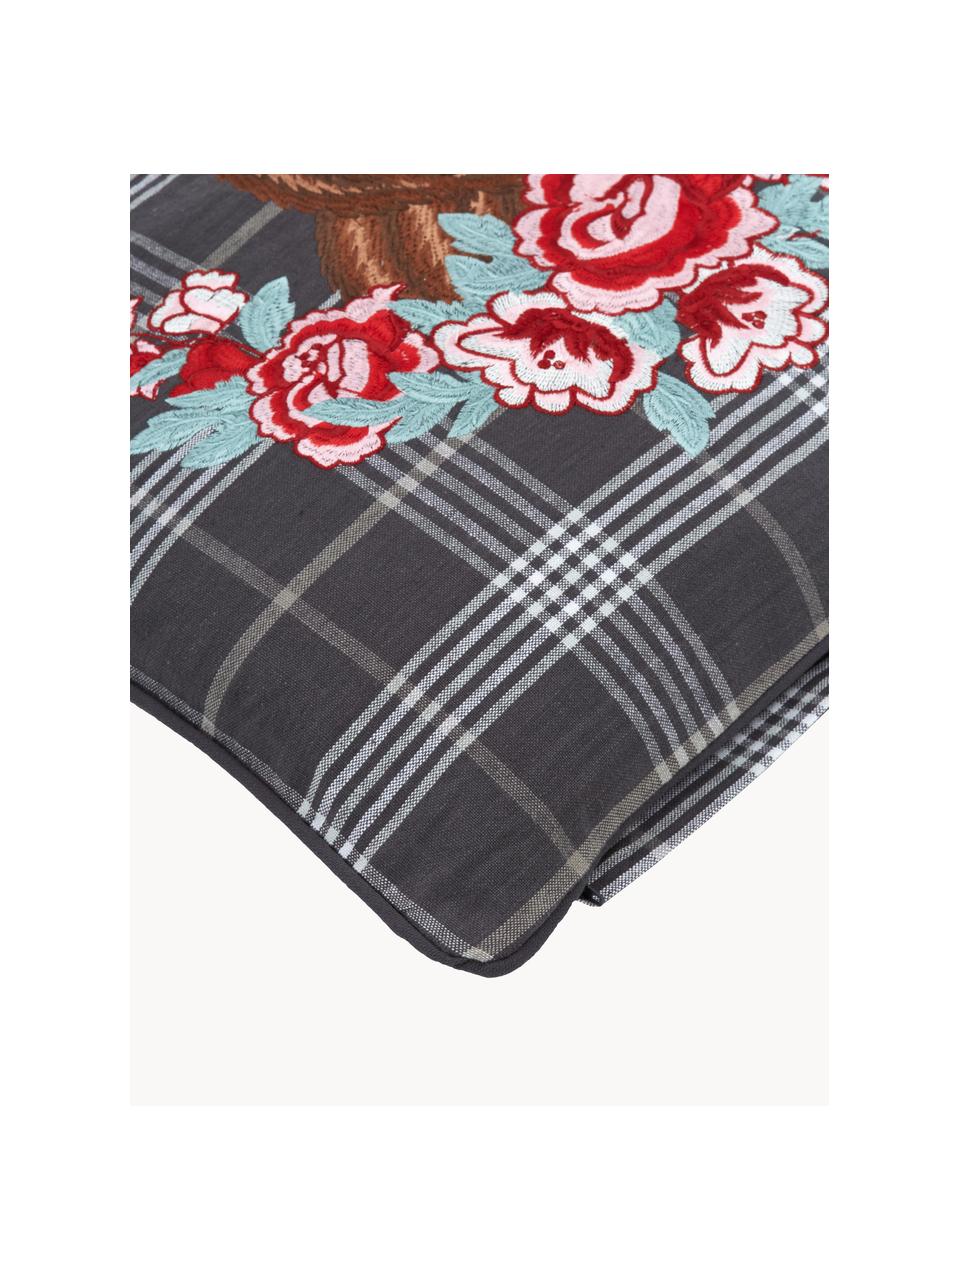 Poszewka na poduszkę z haftem Bear, 100% bawełna, Ciemny szary, wielobarwny, S 45 x D 45 cm